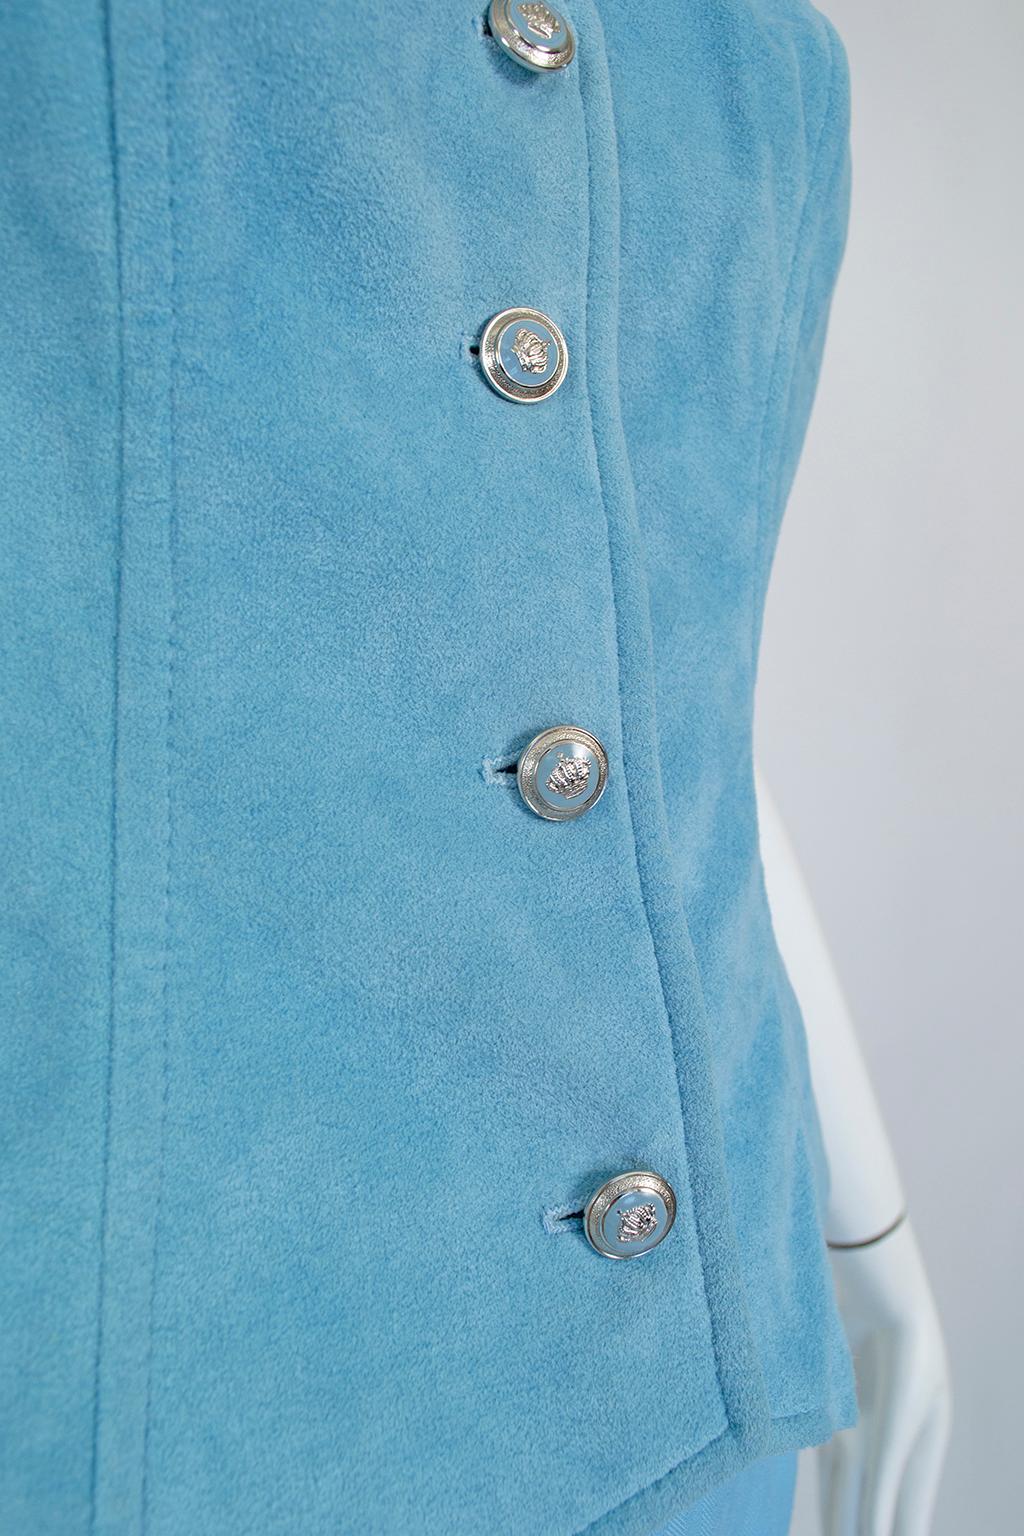 Lilli Ann Paris Powder Blue 3-Piece Western Pant Suit – XS, 1970s For Sale 8